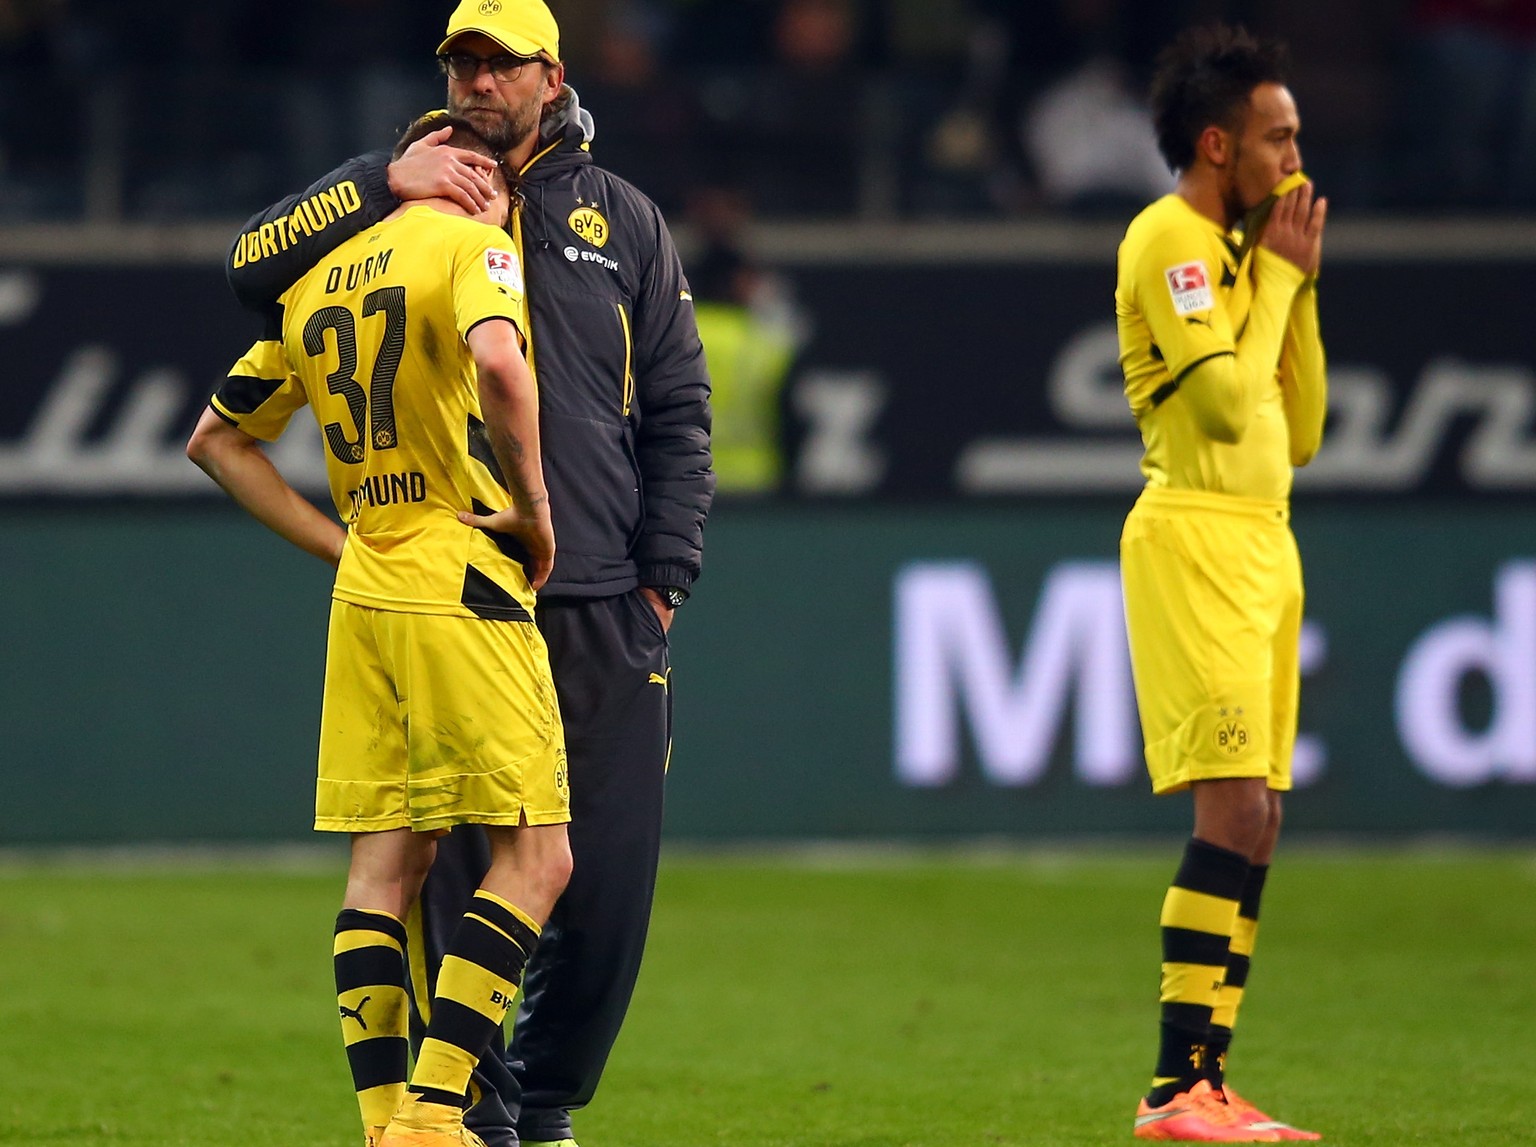 Tristesse pur: Klopp muss nach der Niederlage in Frankfurt seine Spieler trösten.